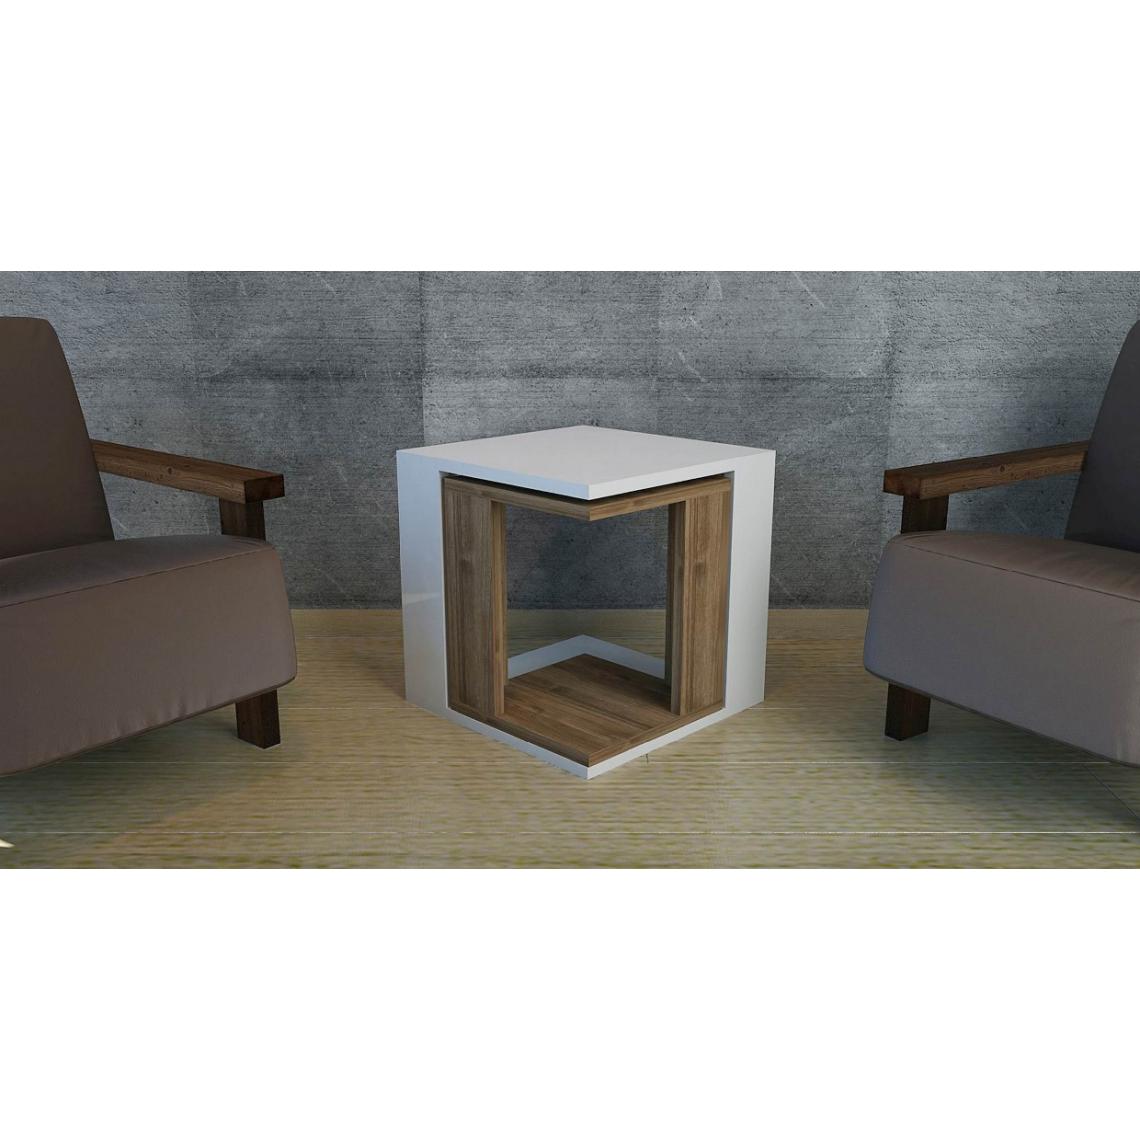 Homemania - Table basse cubique - Modulaire à faible encombrement - Salon, canapé - Blanc, bois de noyer, 40 x 40 x 40 cm - Tables à manger